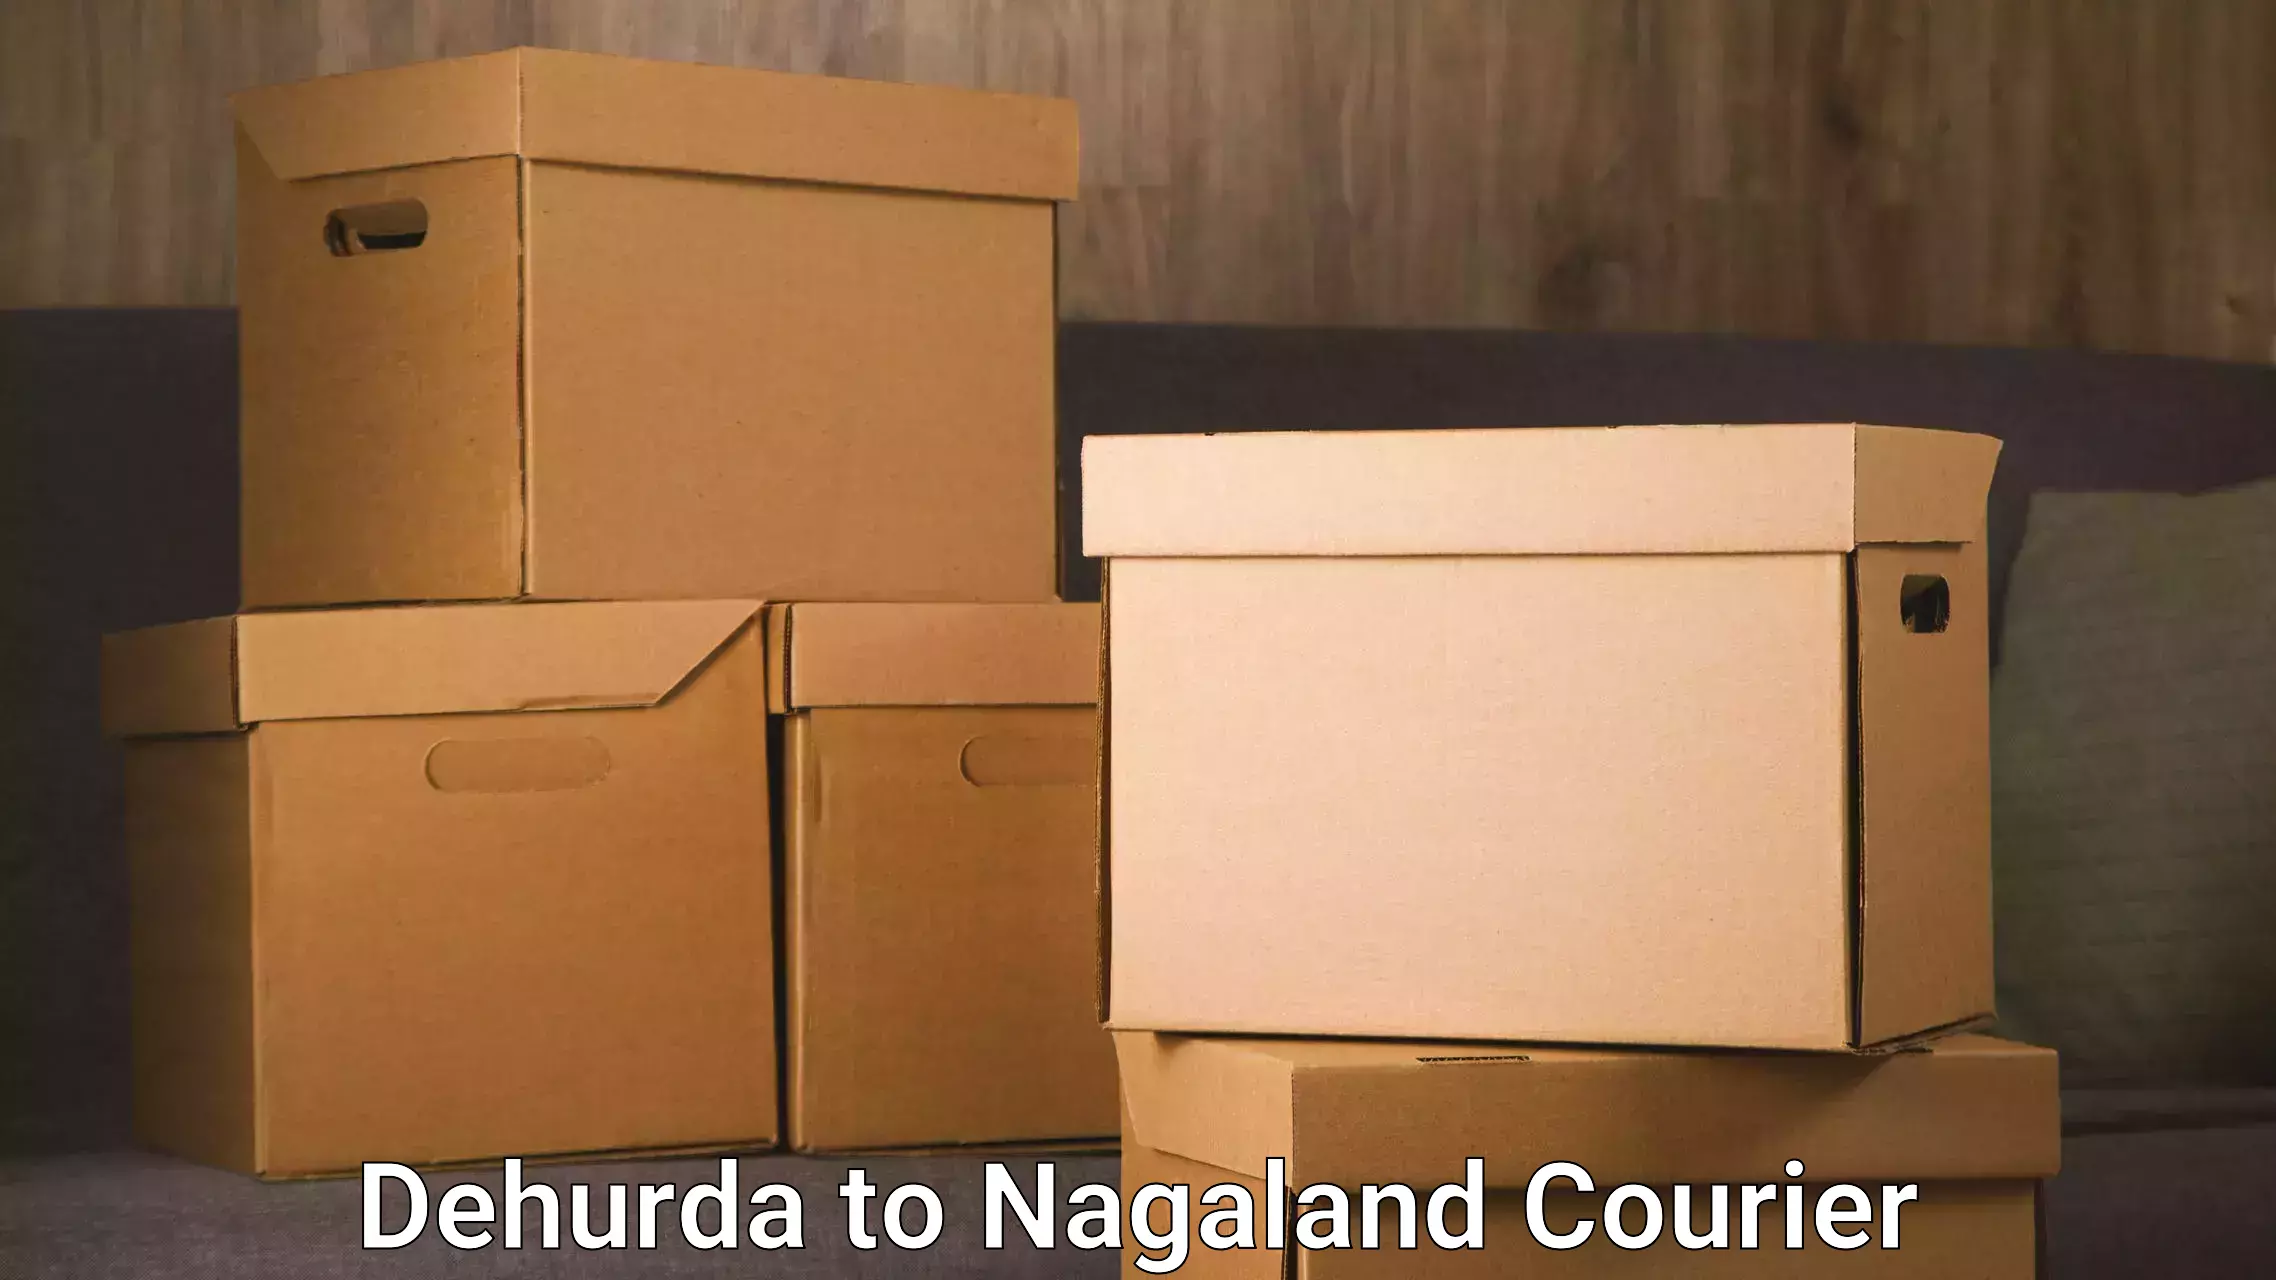 Urgent courier needs Dehurda to Chumukedima